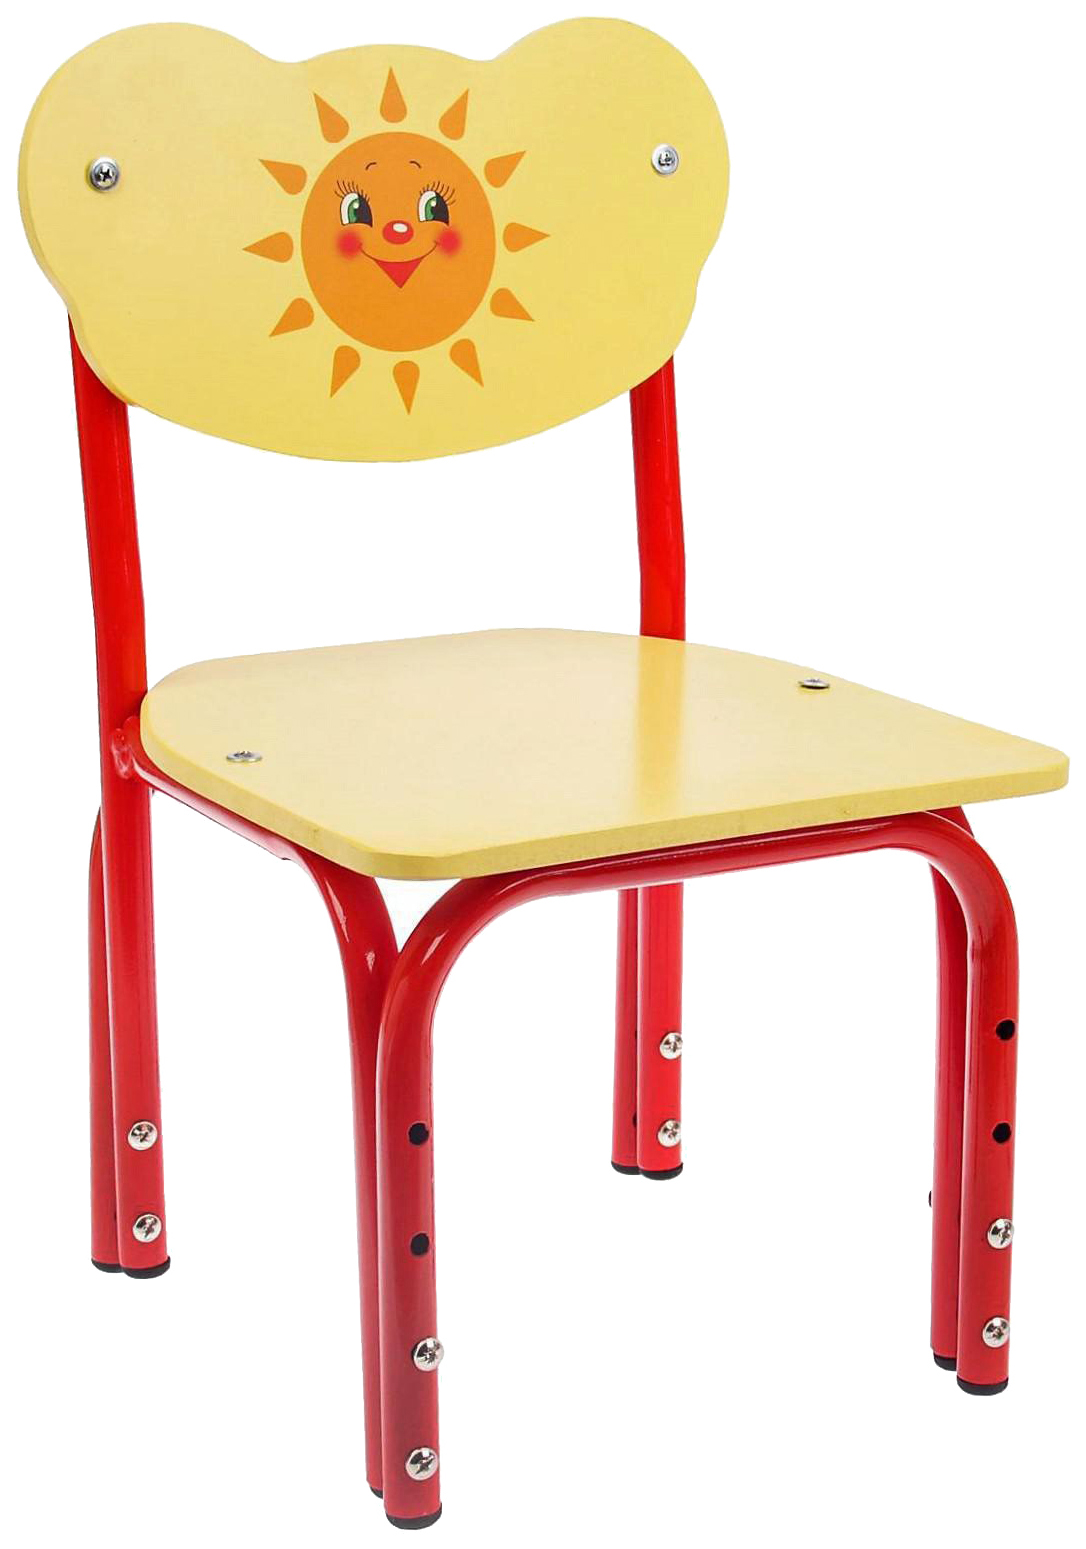 Детский стул Кузя. Солнышко, регулируемый, разборный стул детский регулируемый кузя сказка колобок прямая спинка